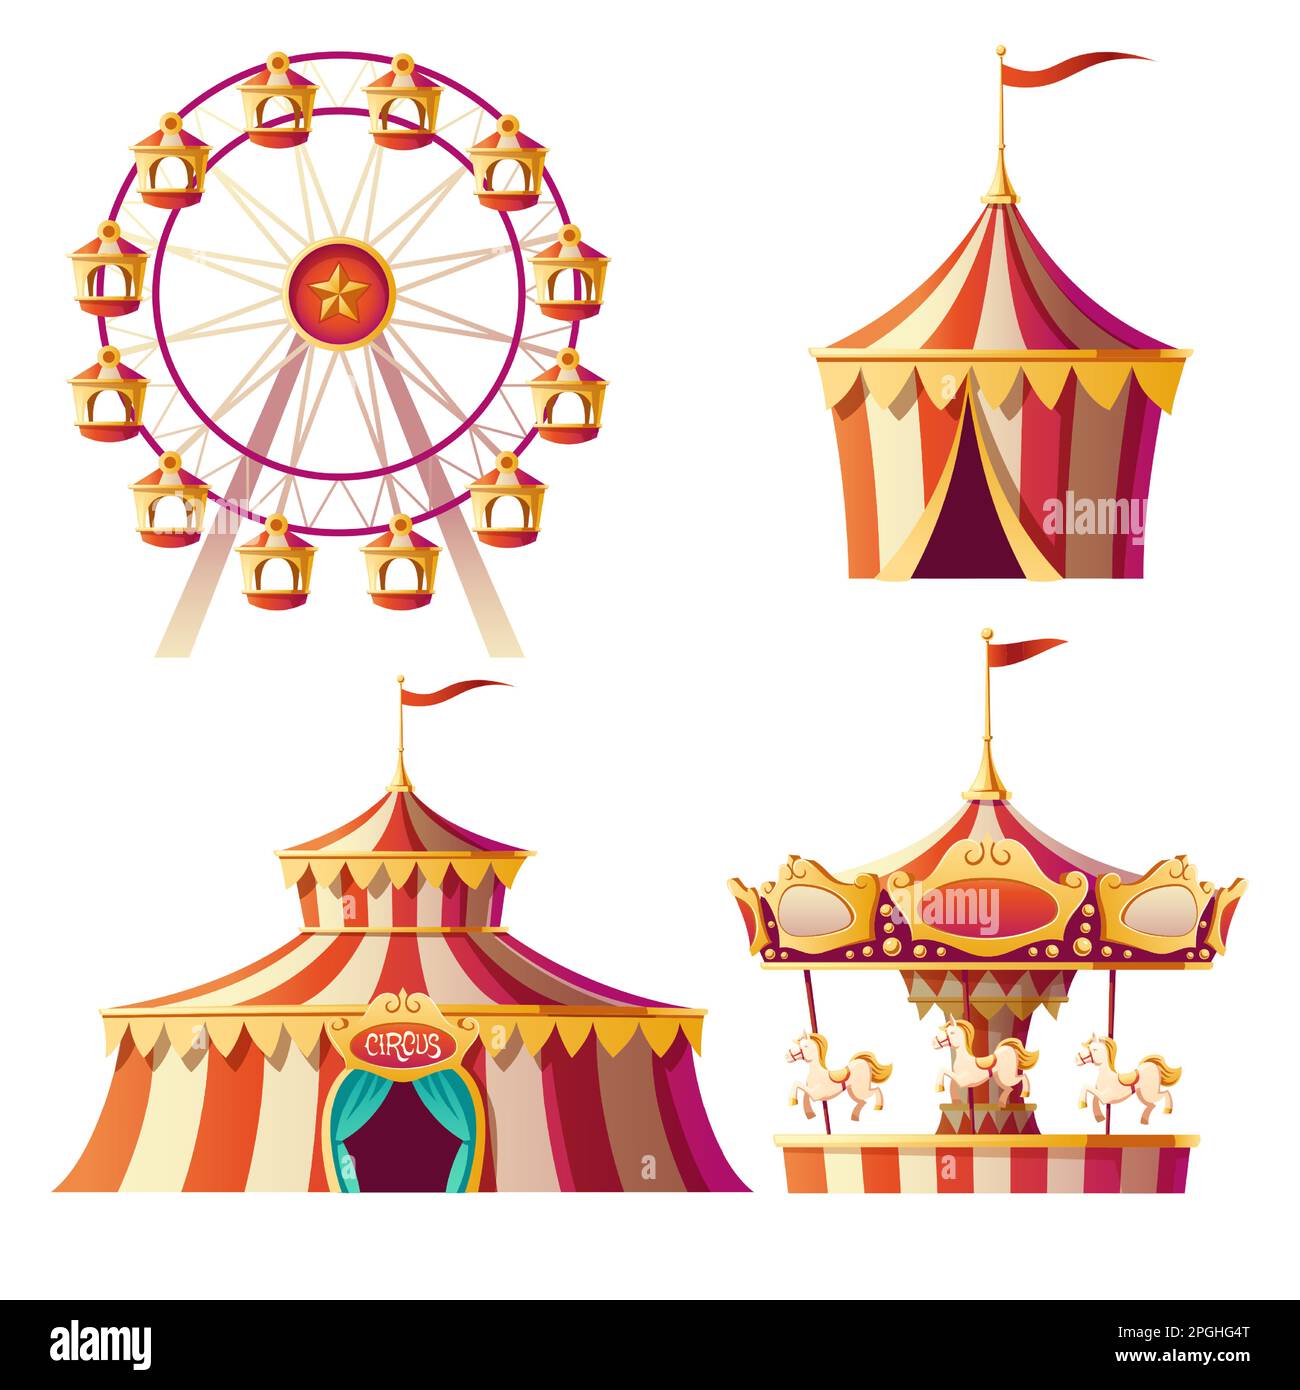 Parco di divertimenti, carnevale o festive cartone animato illustrazione vettore. Allegro-go-round, tenda da circo e ruota panoramica, elementi per il divertimento estivo dei bambini isolati su sfondo bianco, set di annunci Illustrazione Vettoriale